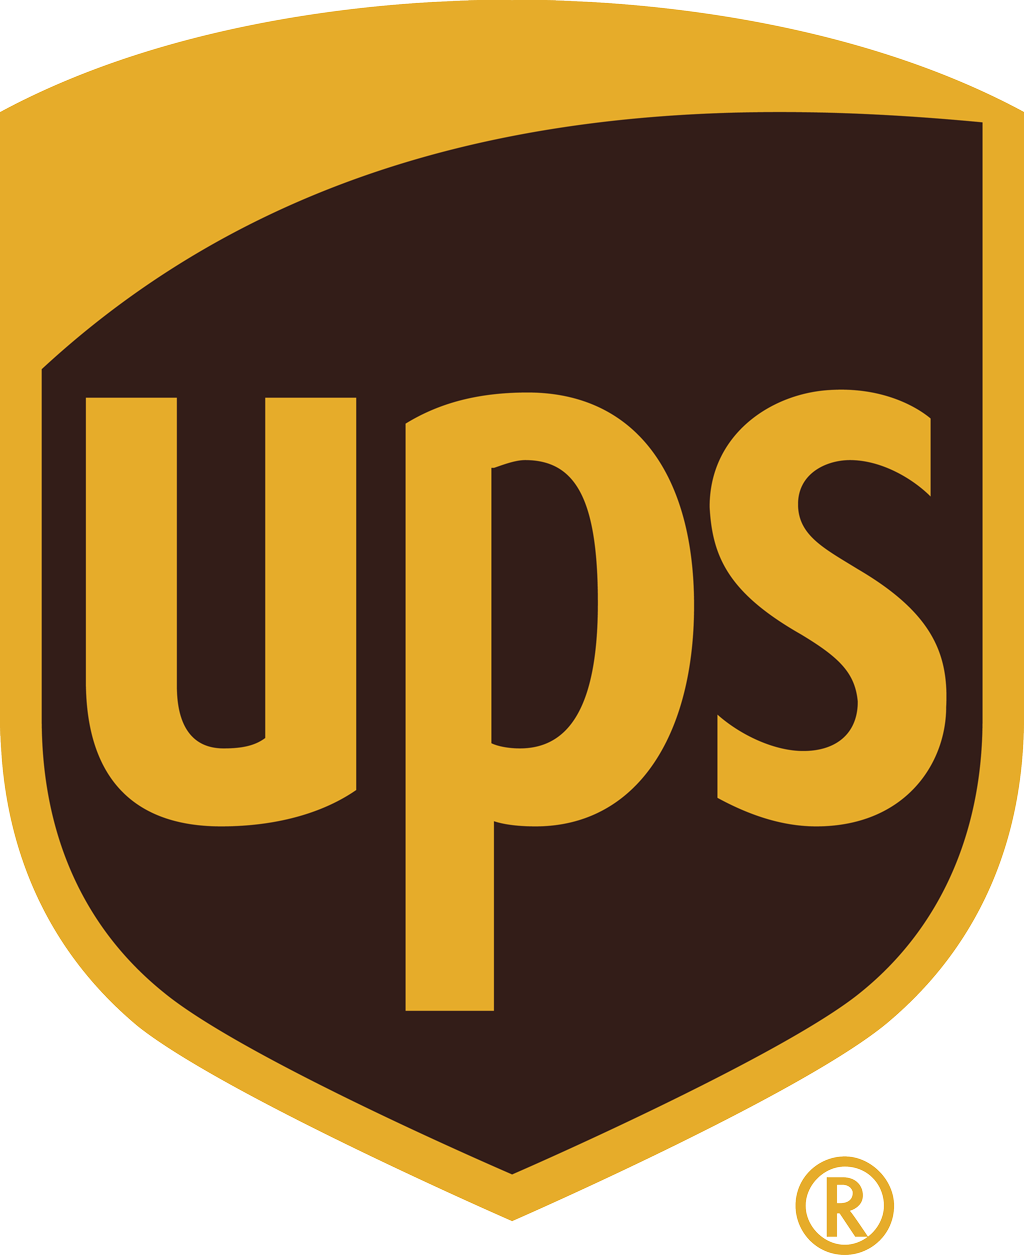 UPS logo download.